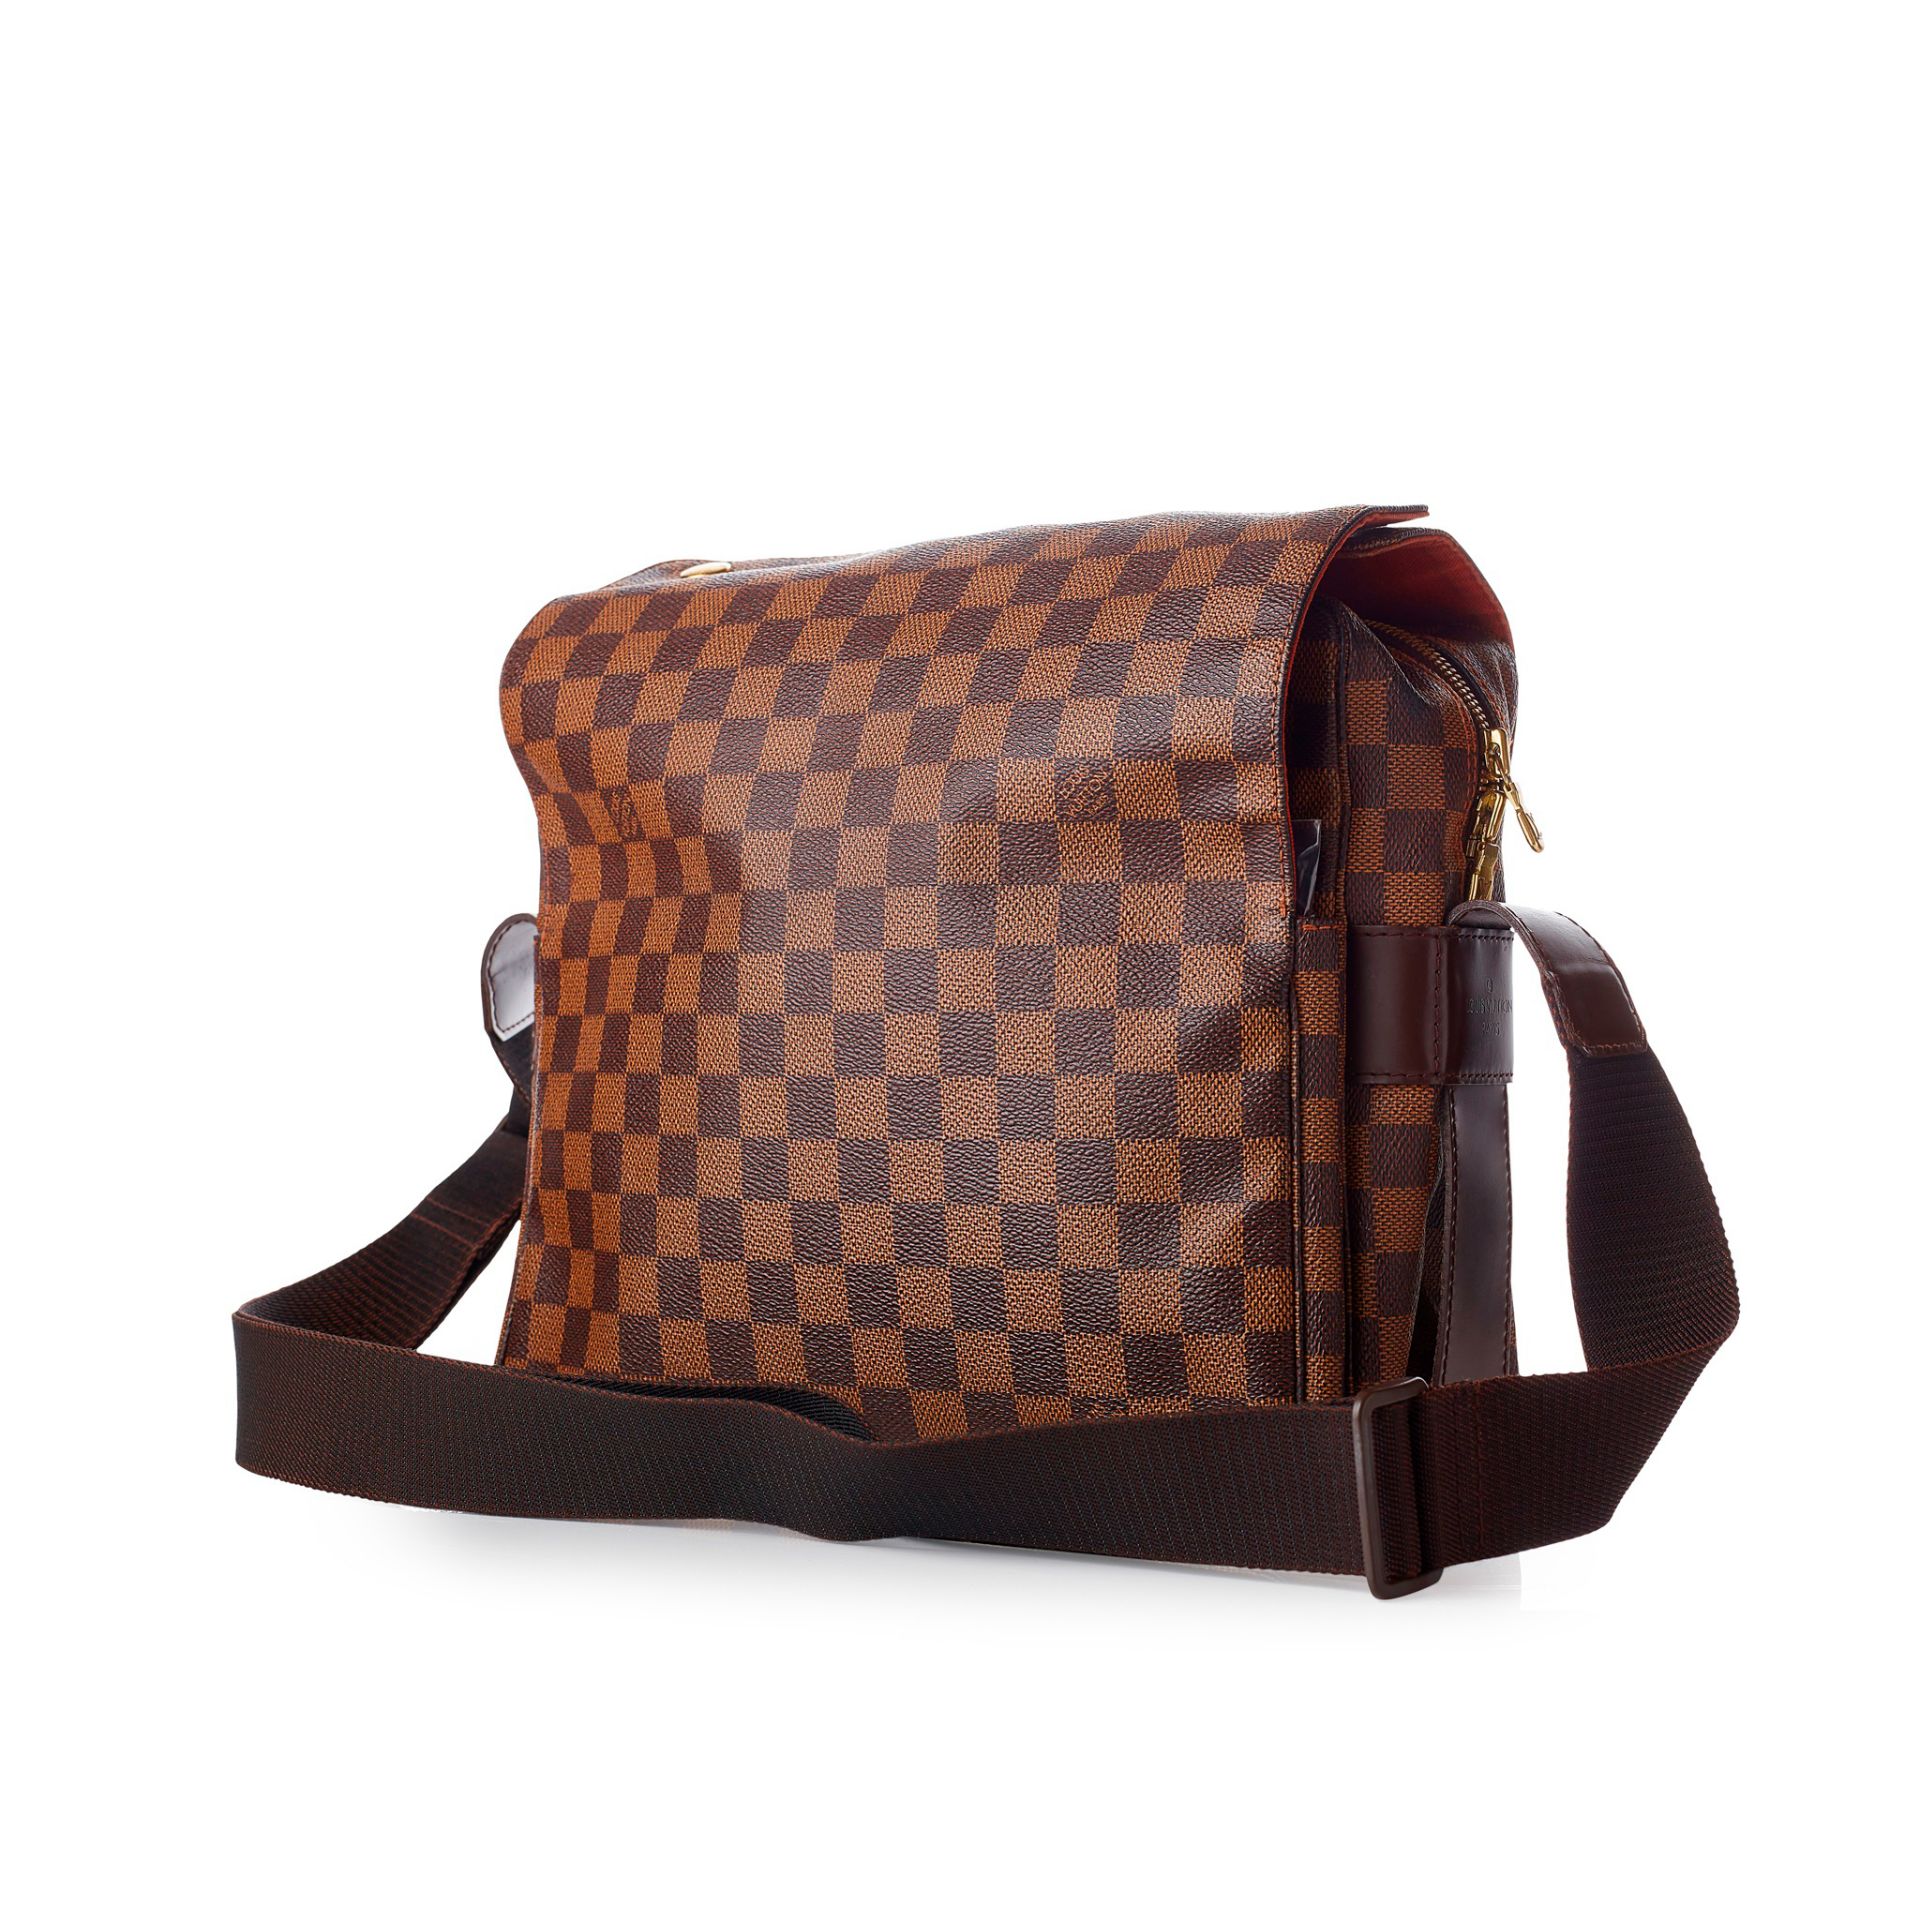 A 'Naviglio' shoulder bag, Louis Vuitton